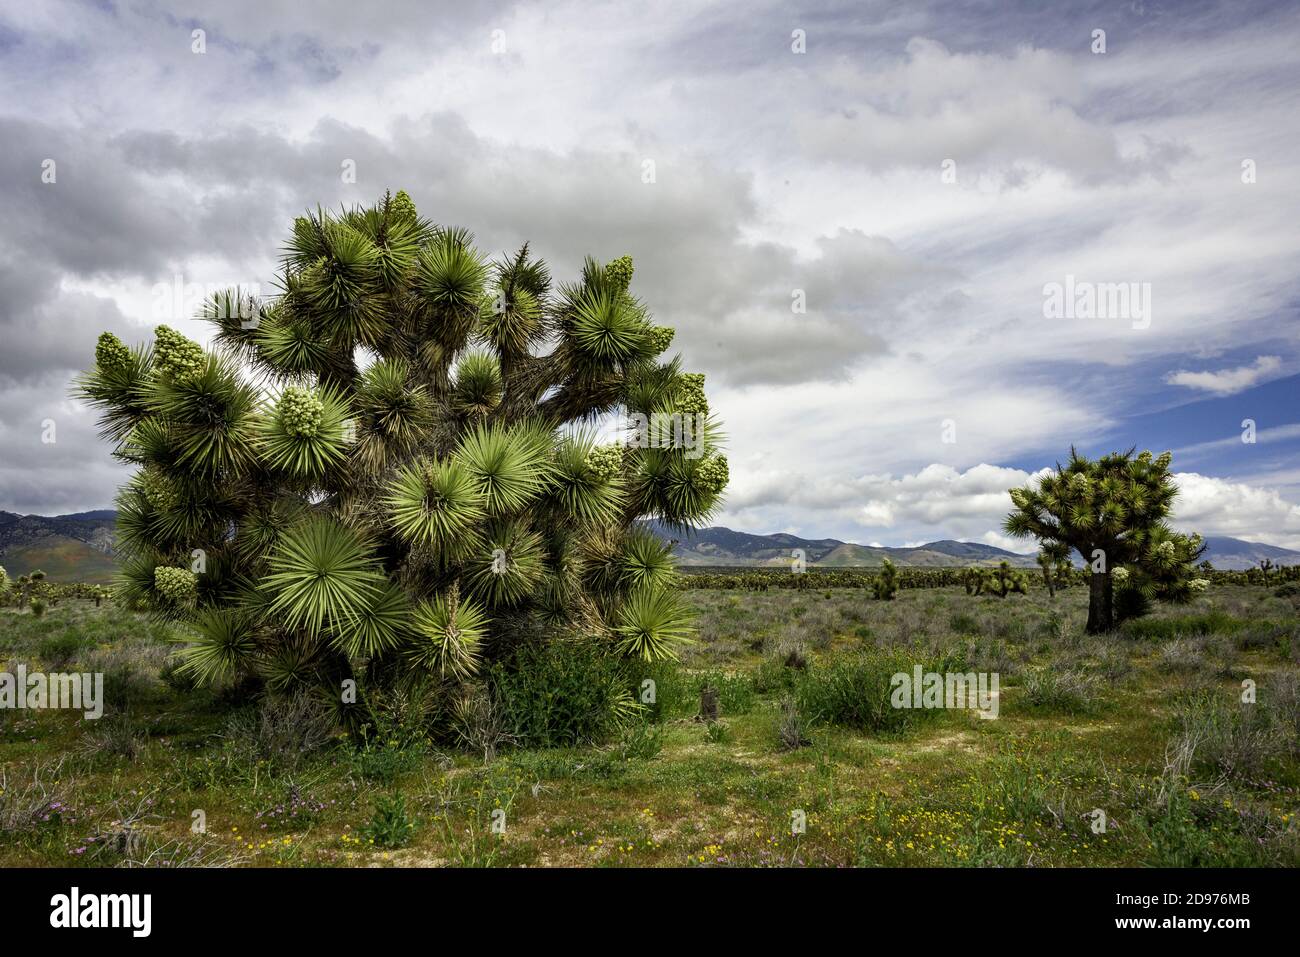 Joshua Tree (Yucca brevifolia) est une espèce végétale, semblable à un arbre en habitude, qui se trouve dans le sud-ouest des États-Unis dans le désert de Mojave. Banque D'Images